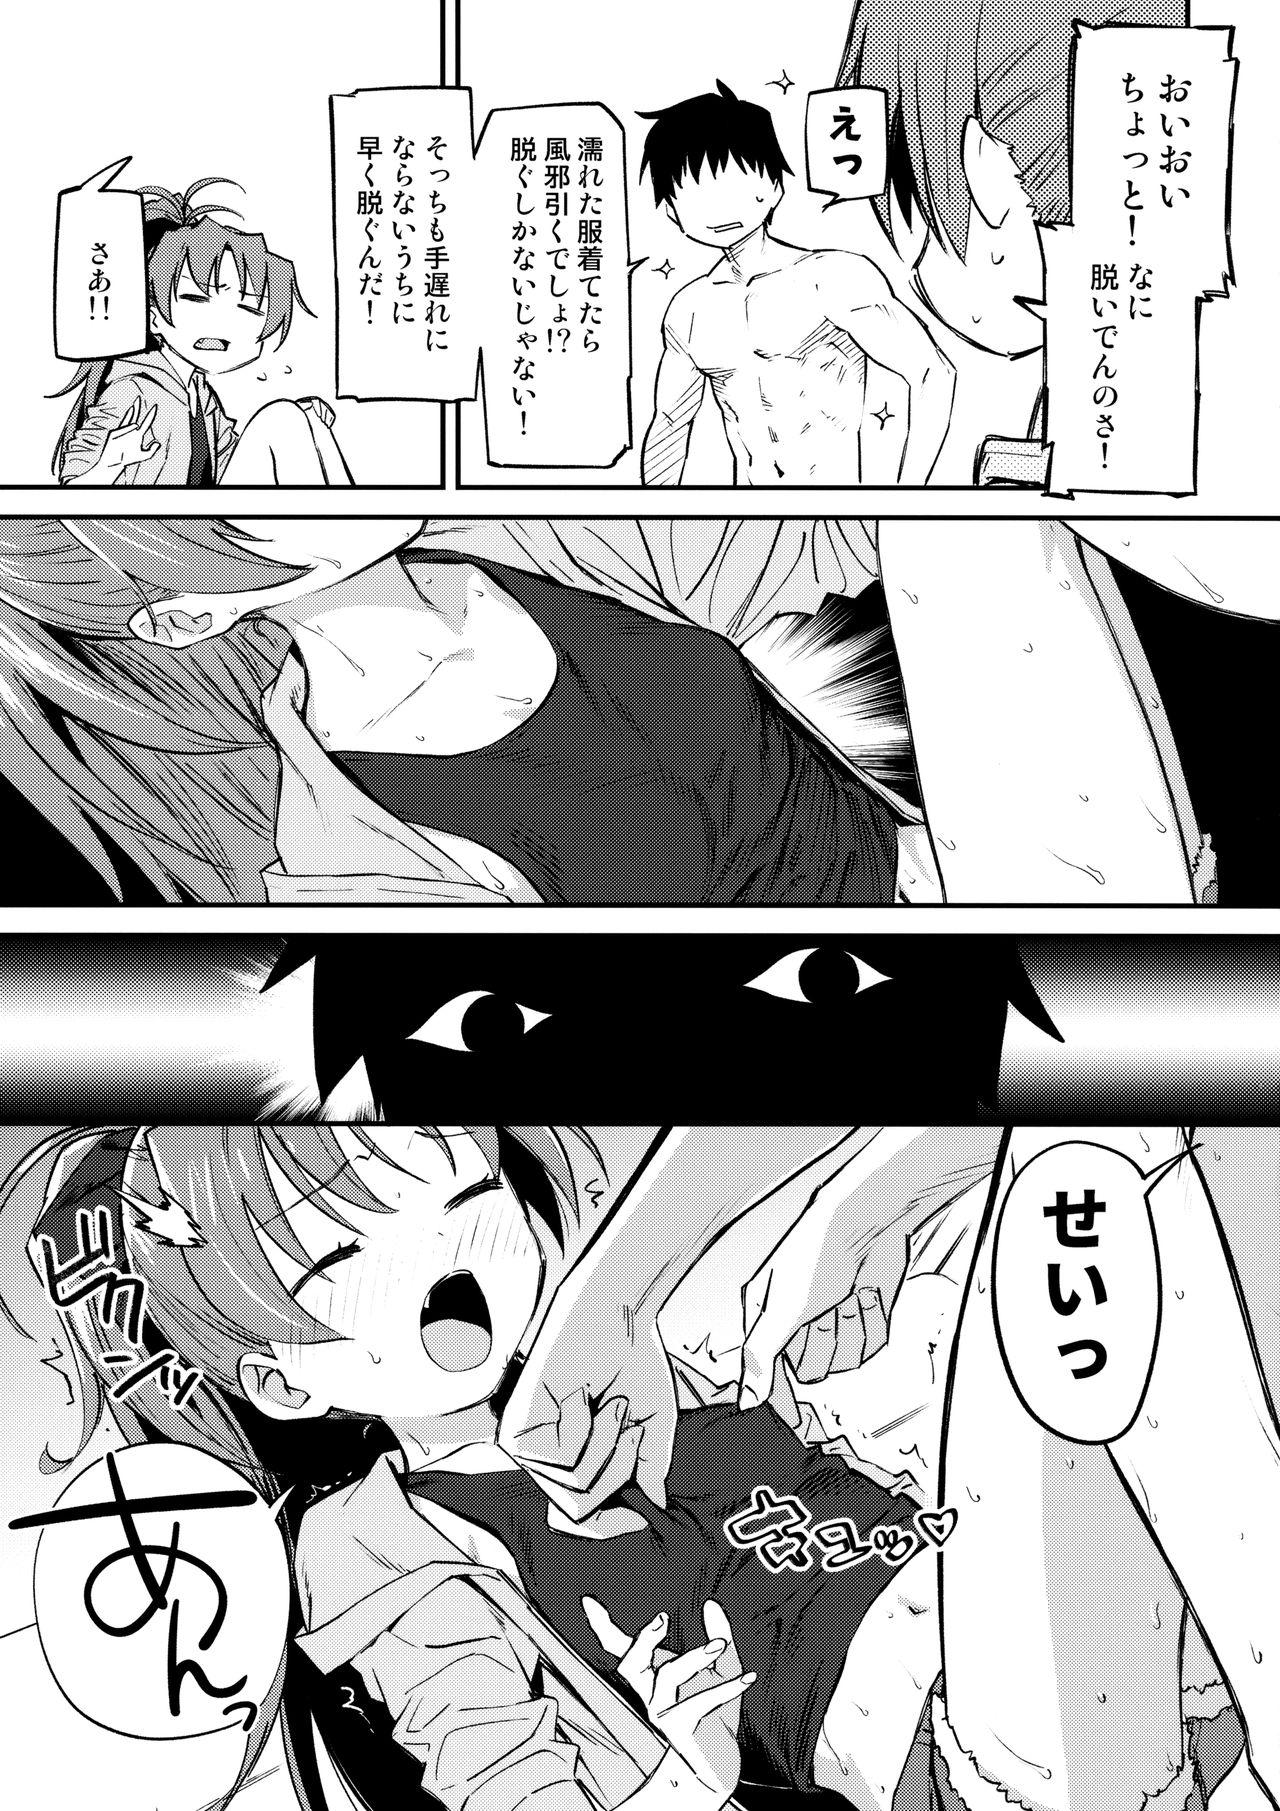 Perfect Butt Kyouko to Are Suru Hon 3 - Puella magi madoka magica Passion - Page 4